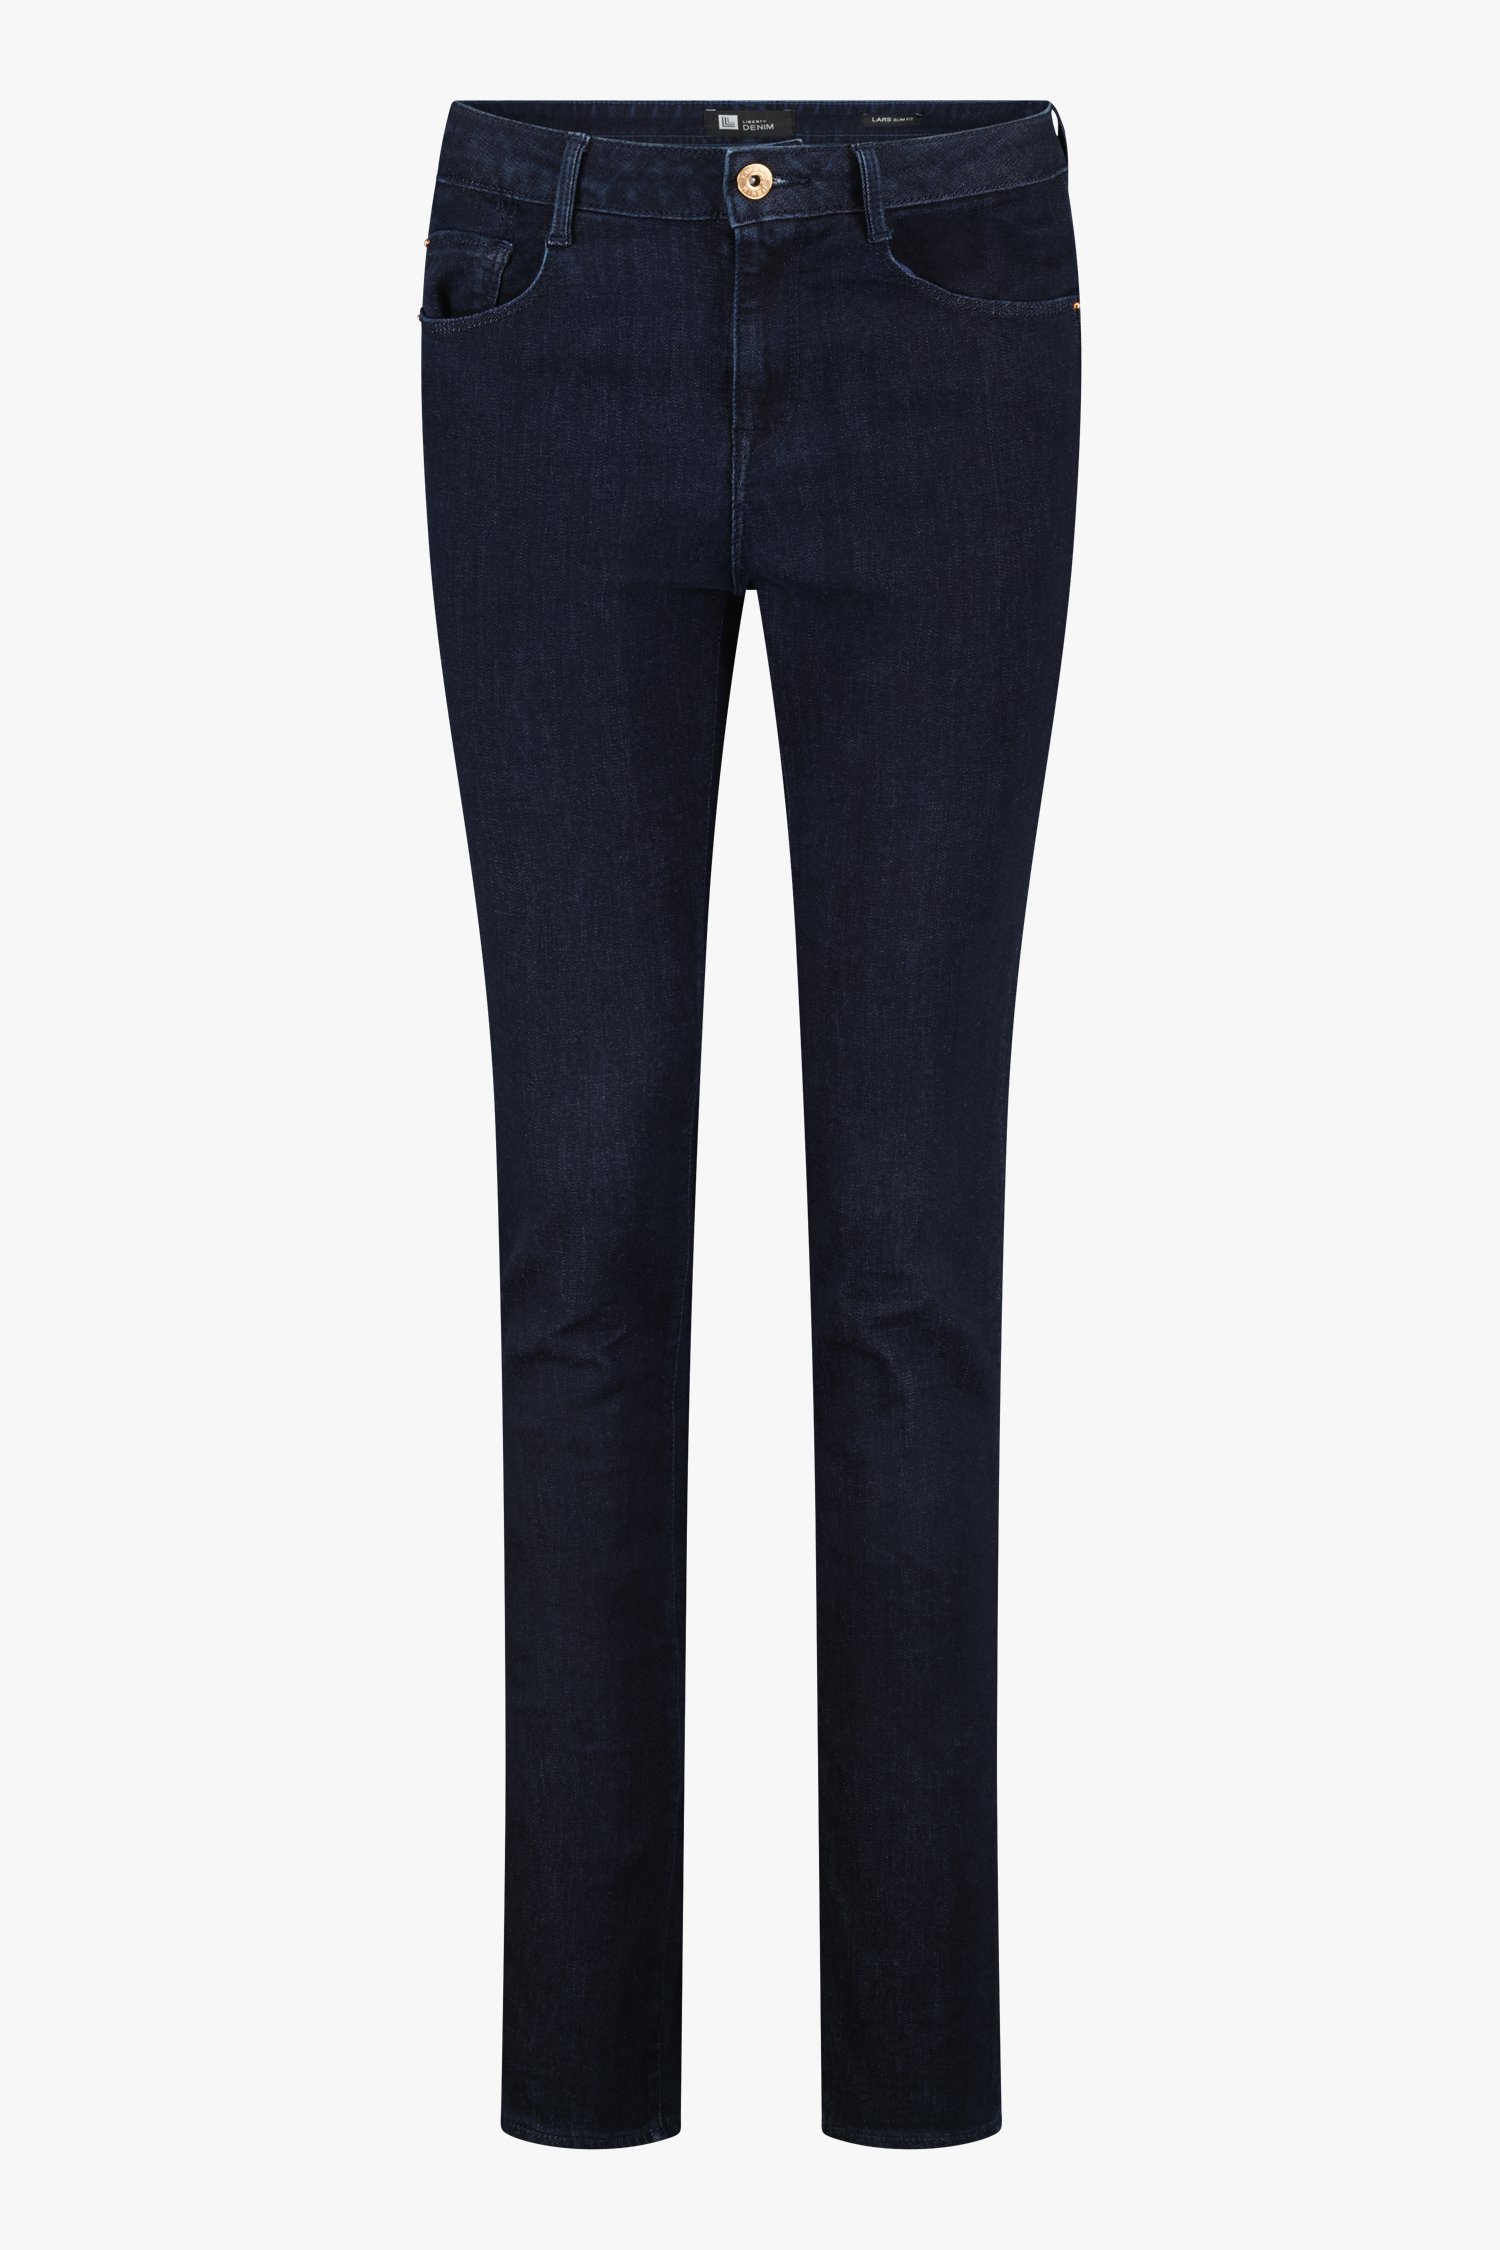 Donkerblauwe jeans - Lily - slim fit - L34 van Liberty Island Denim voor Dames